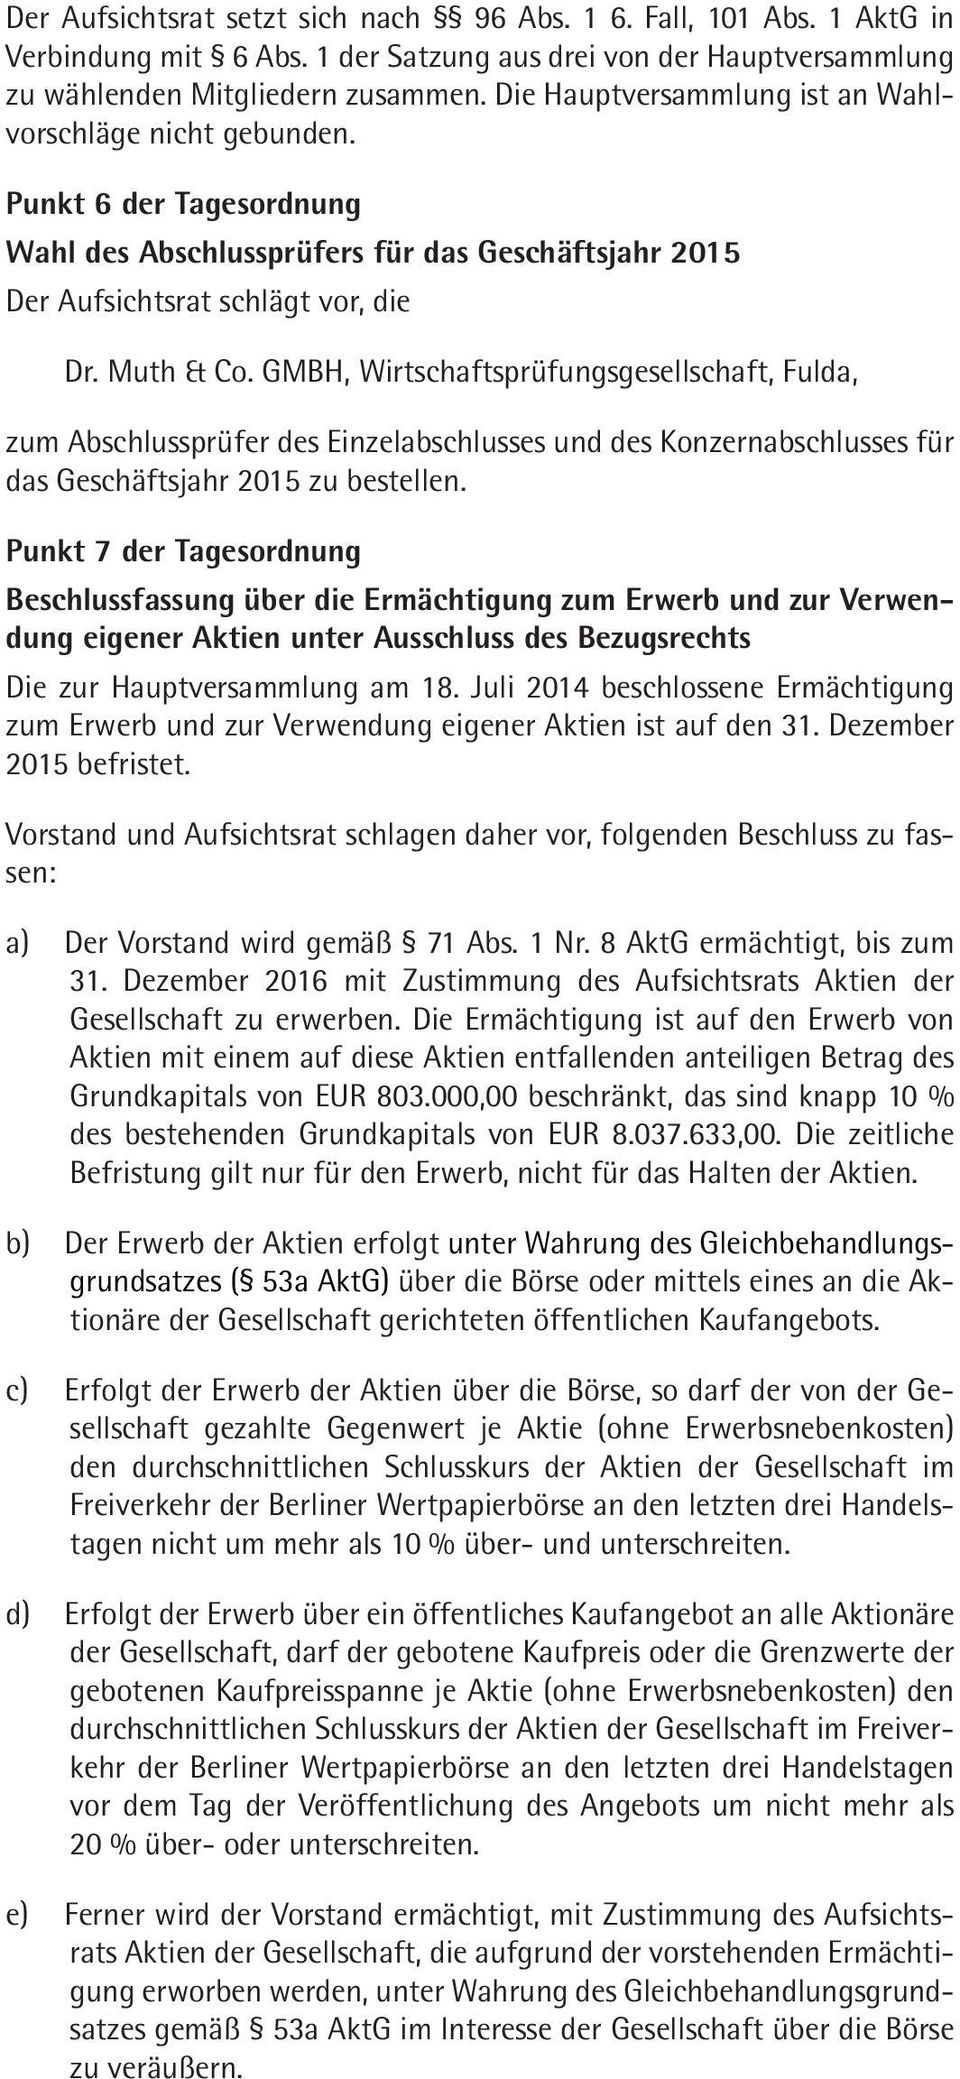 GMBH, Wirtschaftsprüfungsgesellschaft, Fulda, zum Abschlussprüfer des Einzelabschlusses und des Konzernabschlusses für das Geschäftsjahr 2015 zu bestellen.